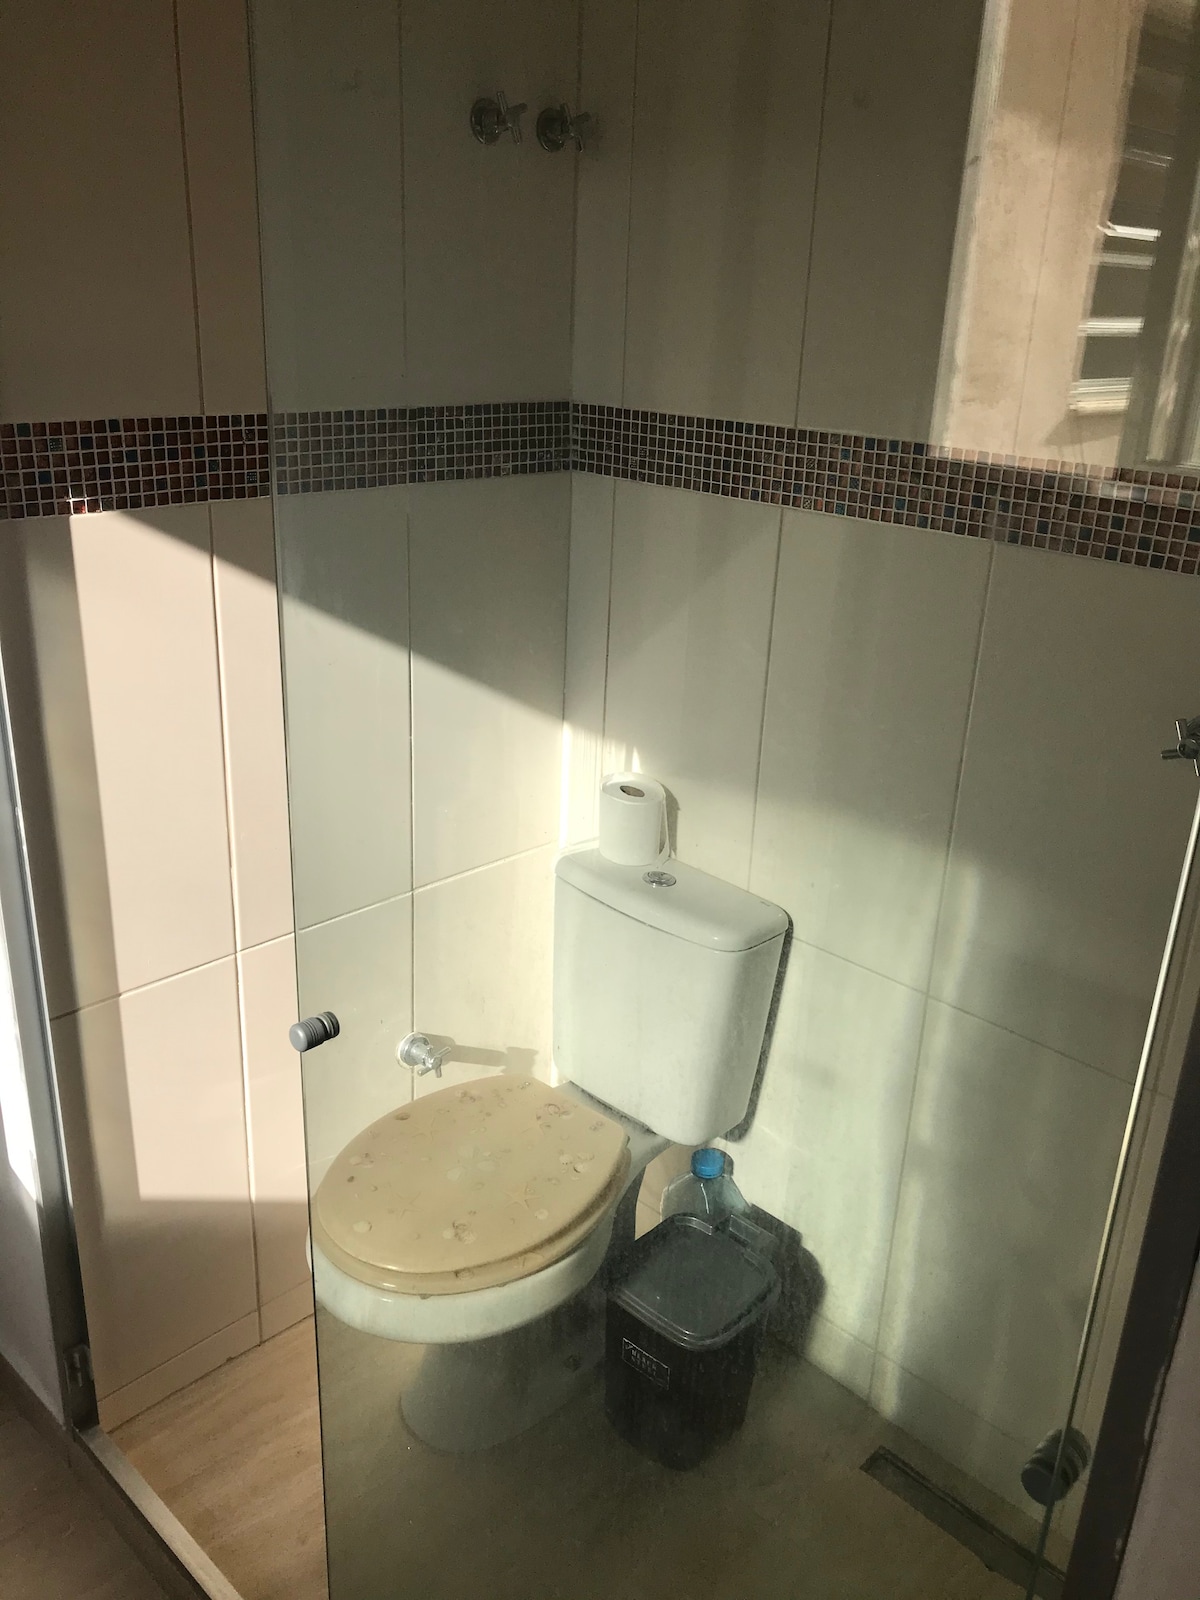 Quarto independente Copacabana banheiro privado